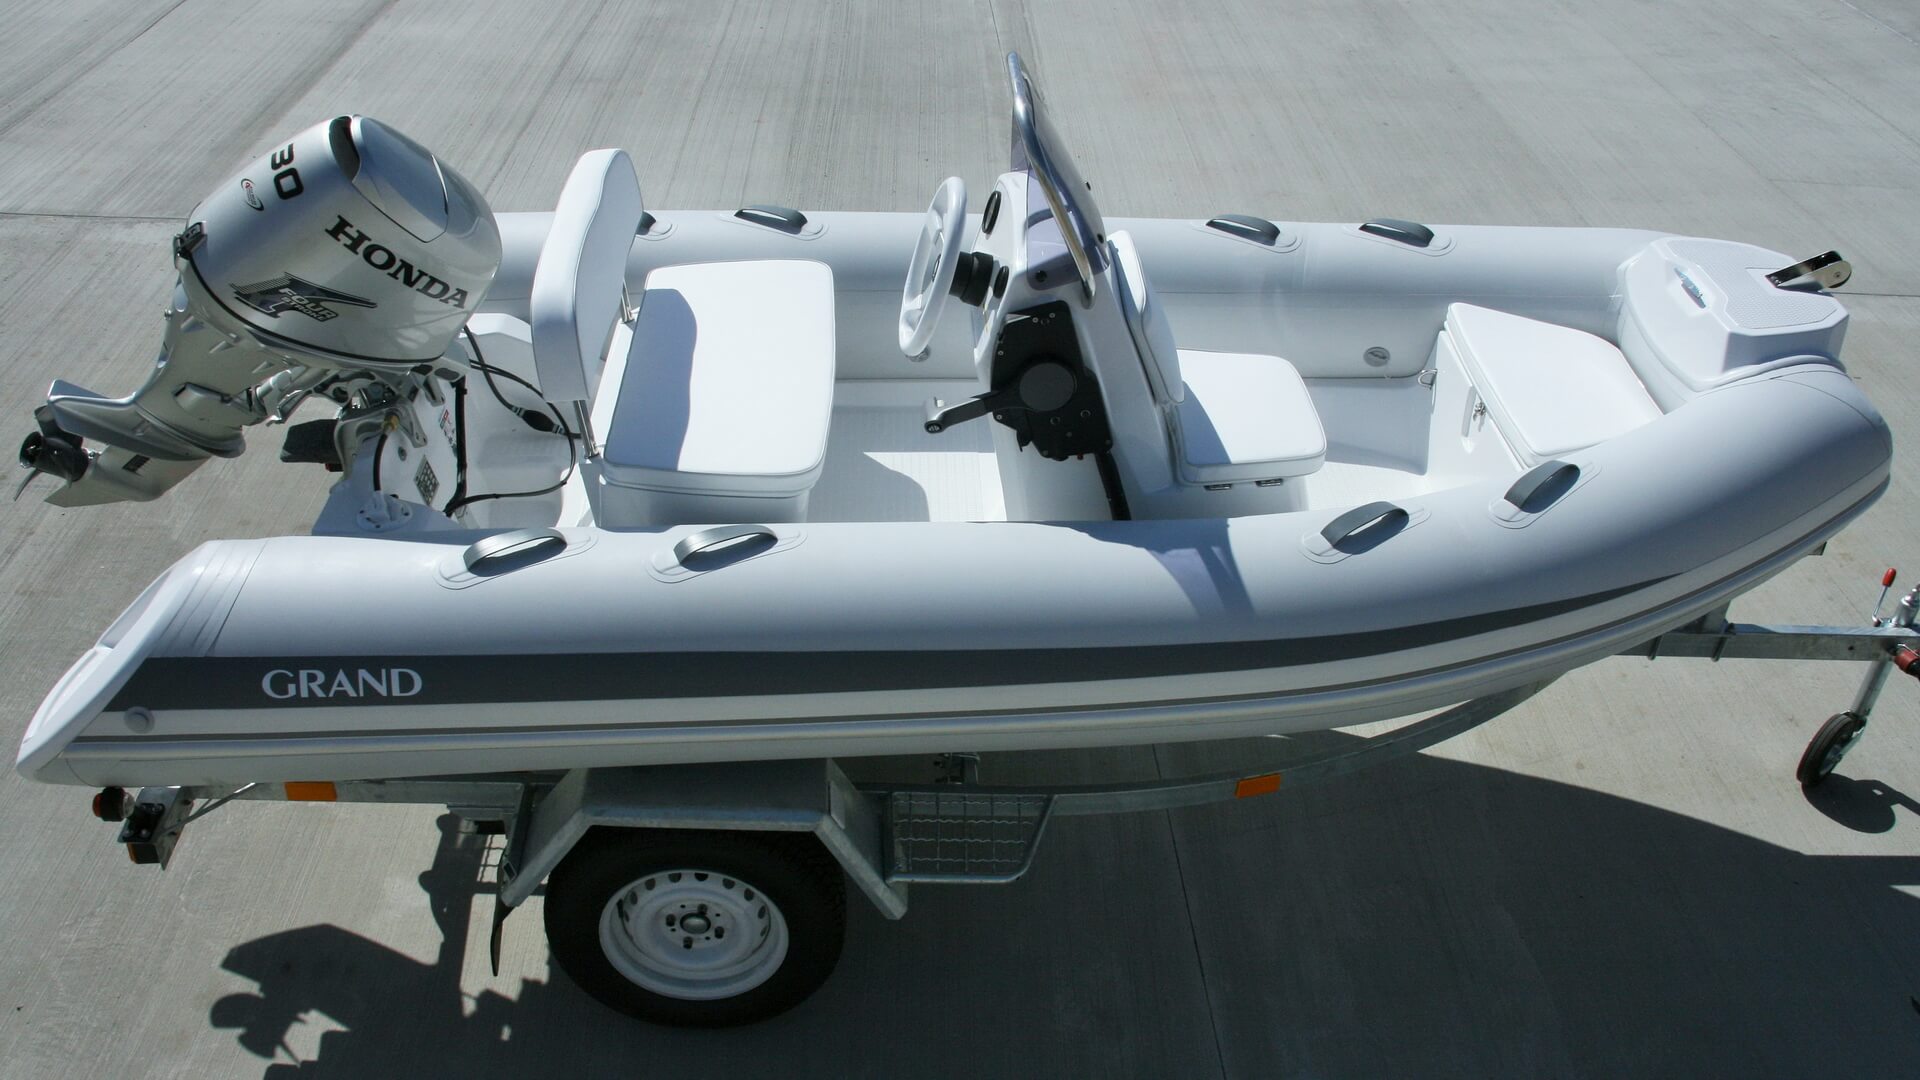 Надувная лодка с жестким дном GRAND Silver Line S370NL, Надувная лодка GRAND Silver Line S370NL, GRAND Silver Line S370NL, GRAND Silver Line S370NLF, GRAND S370NL, GRAND S370NLF, GRAND S370, Надувная лодка GRAND, Надувная лодка ГРАНД, Надувная лодка с жестким дном, RIB, Rigid Inflatable Boats